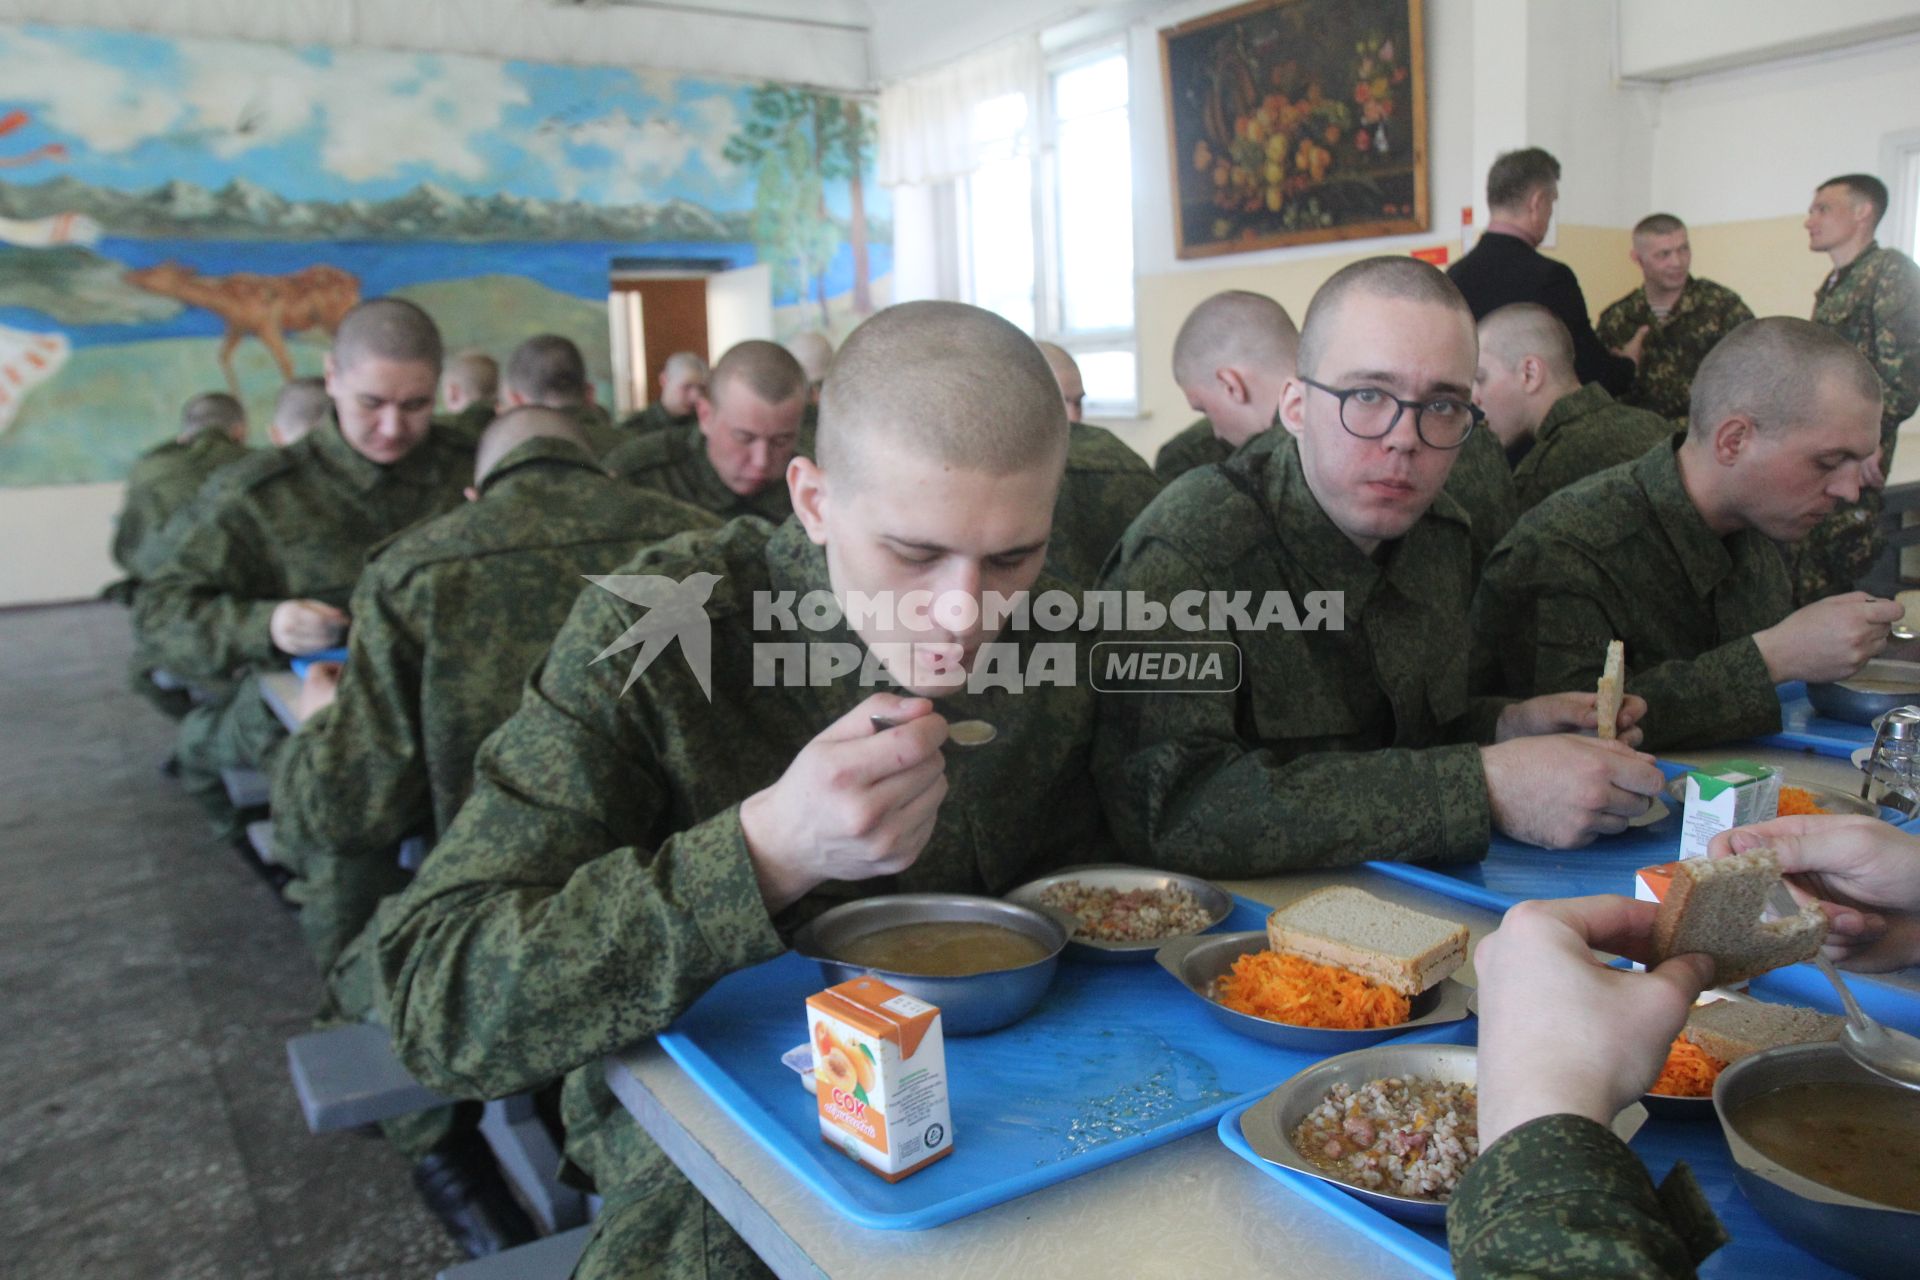 Иркутск.  Призывники обедают в кафе городского сборного пункта Военного комиссариата.